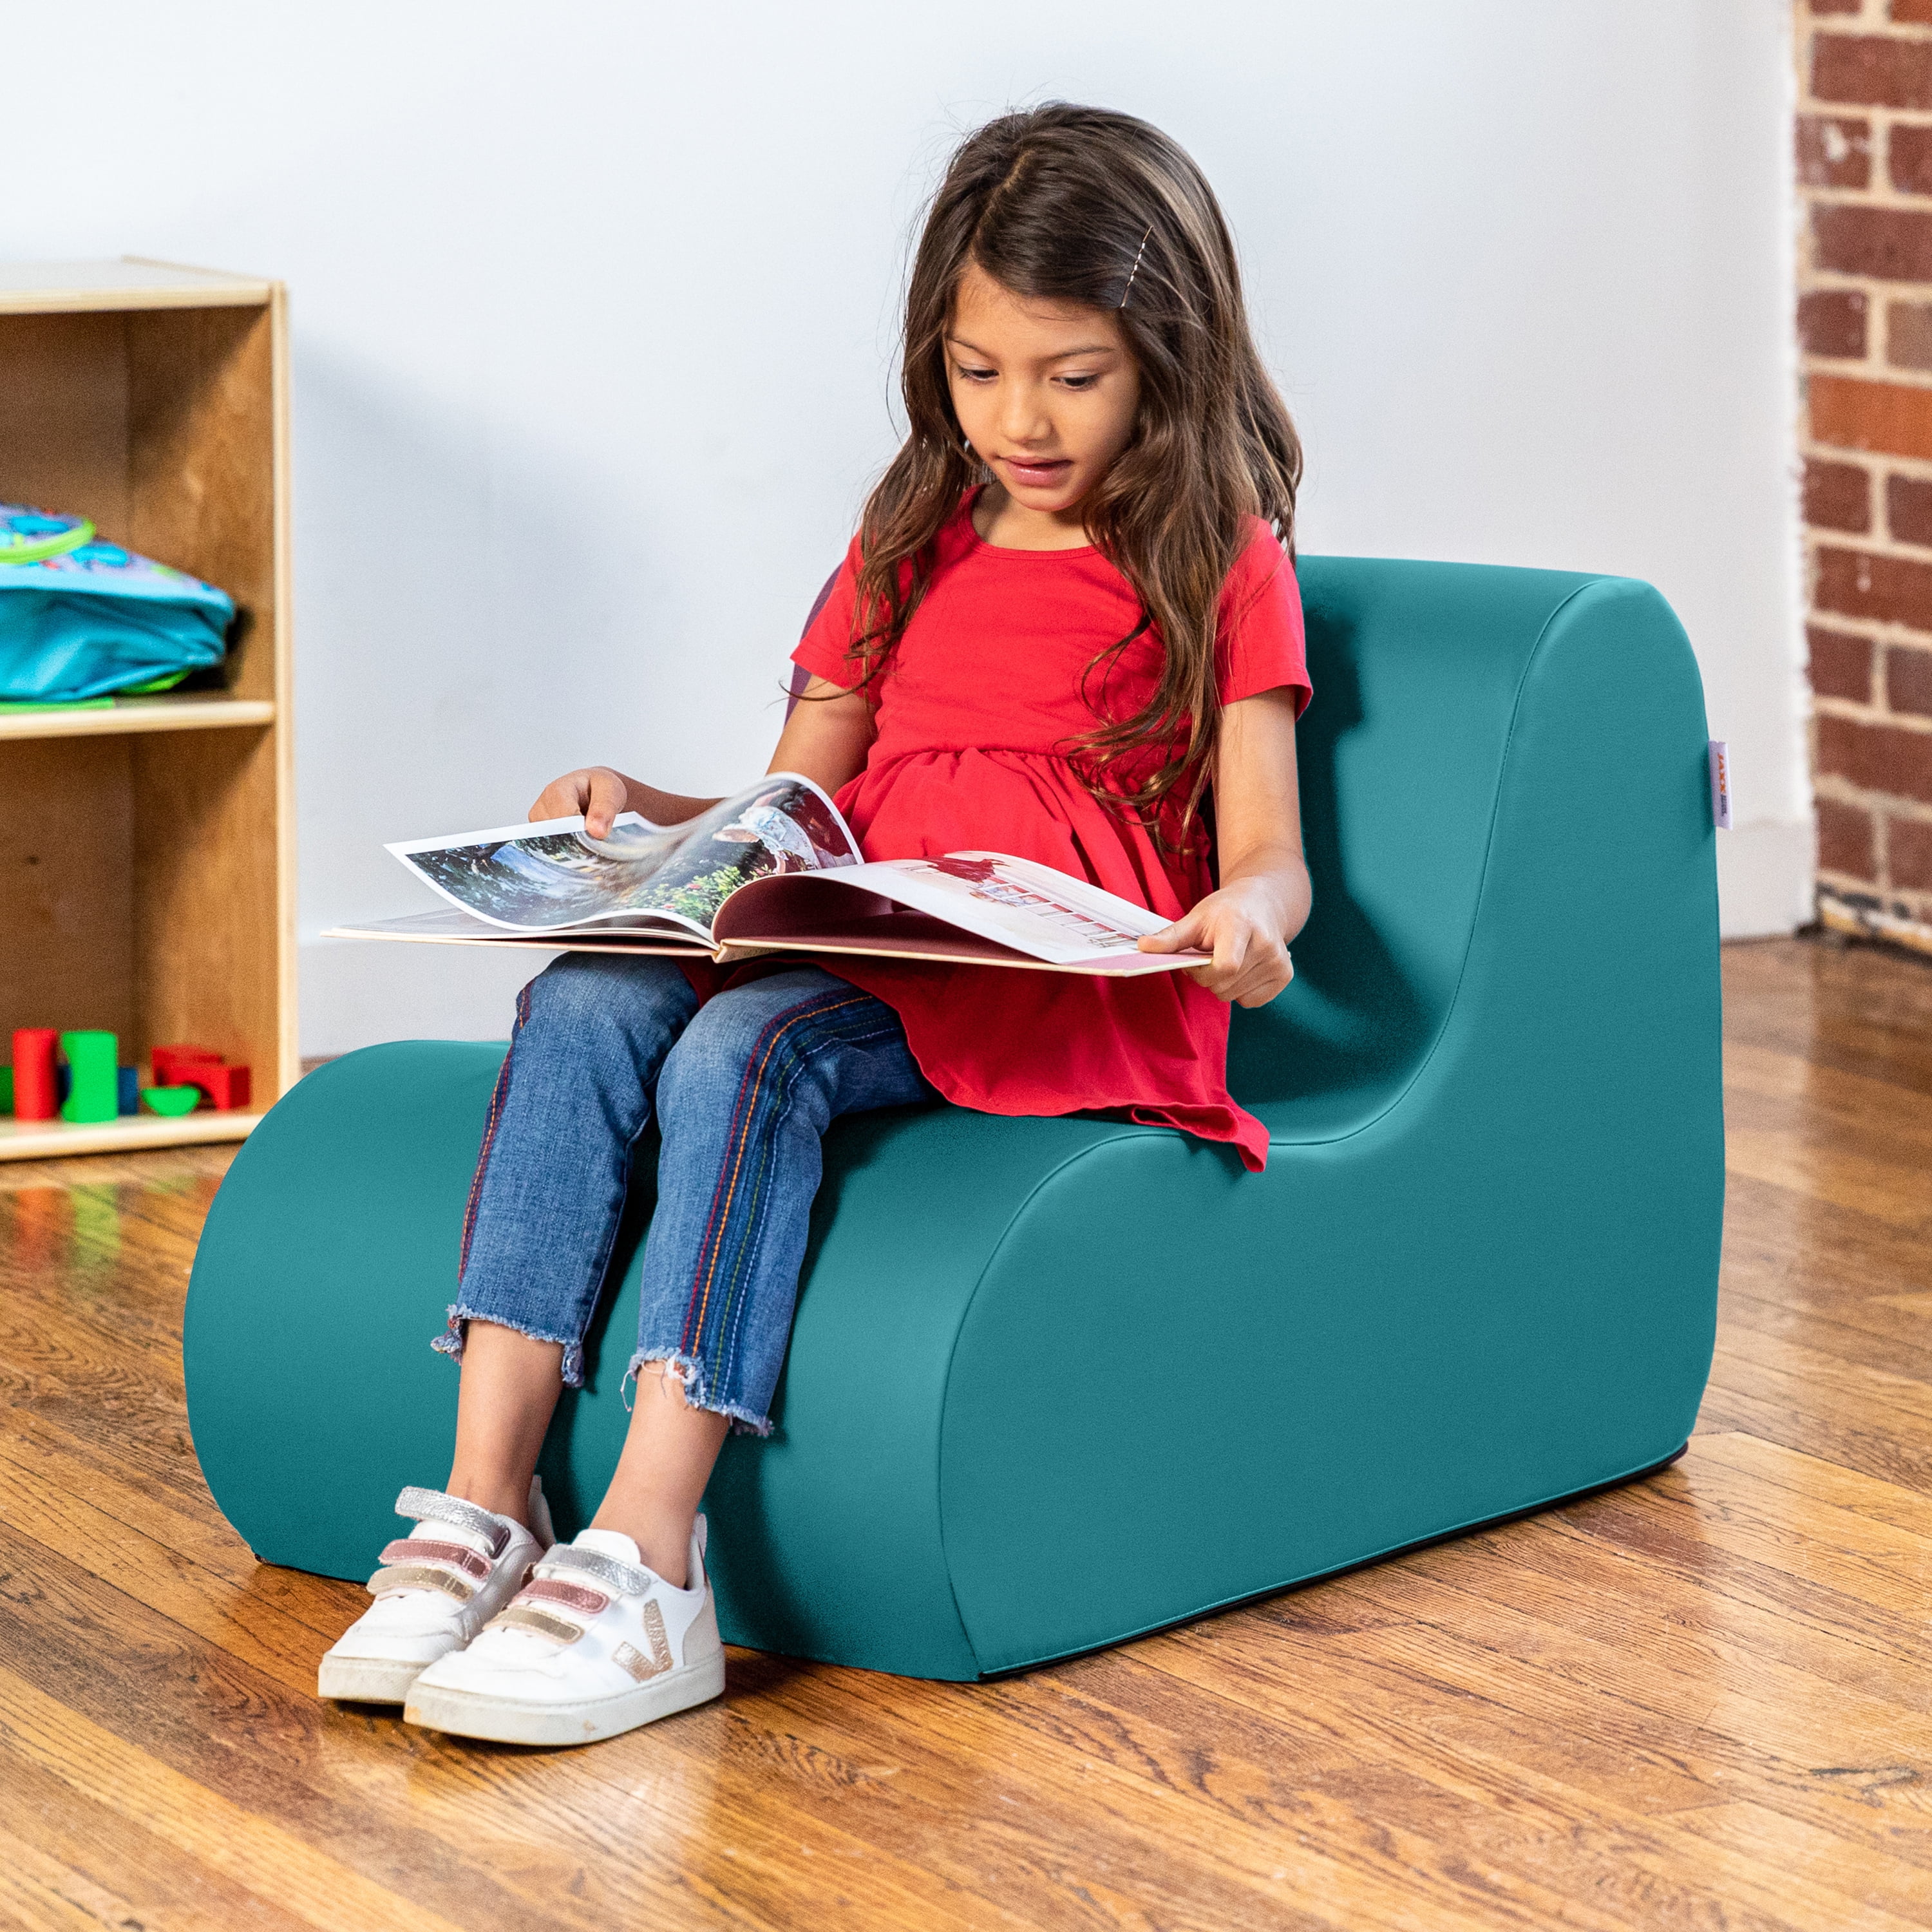 All Jaxx Midtown Jr Classroom Soft Foam Chair Options